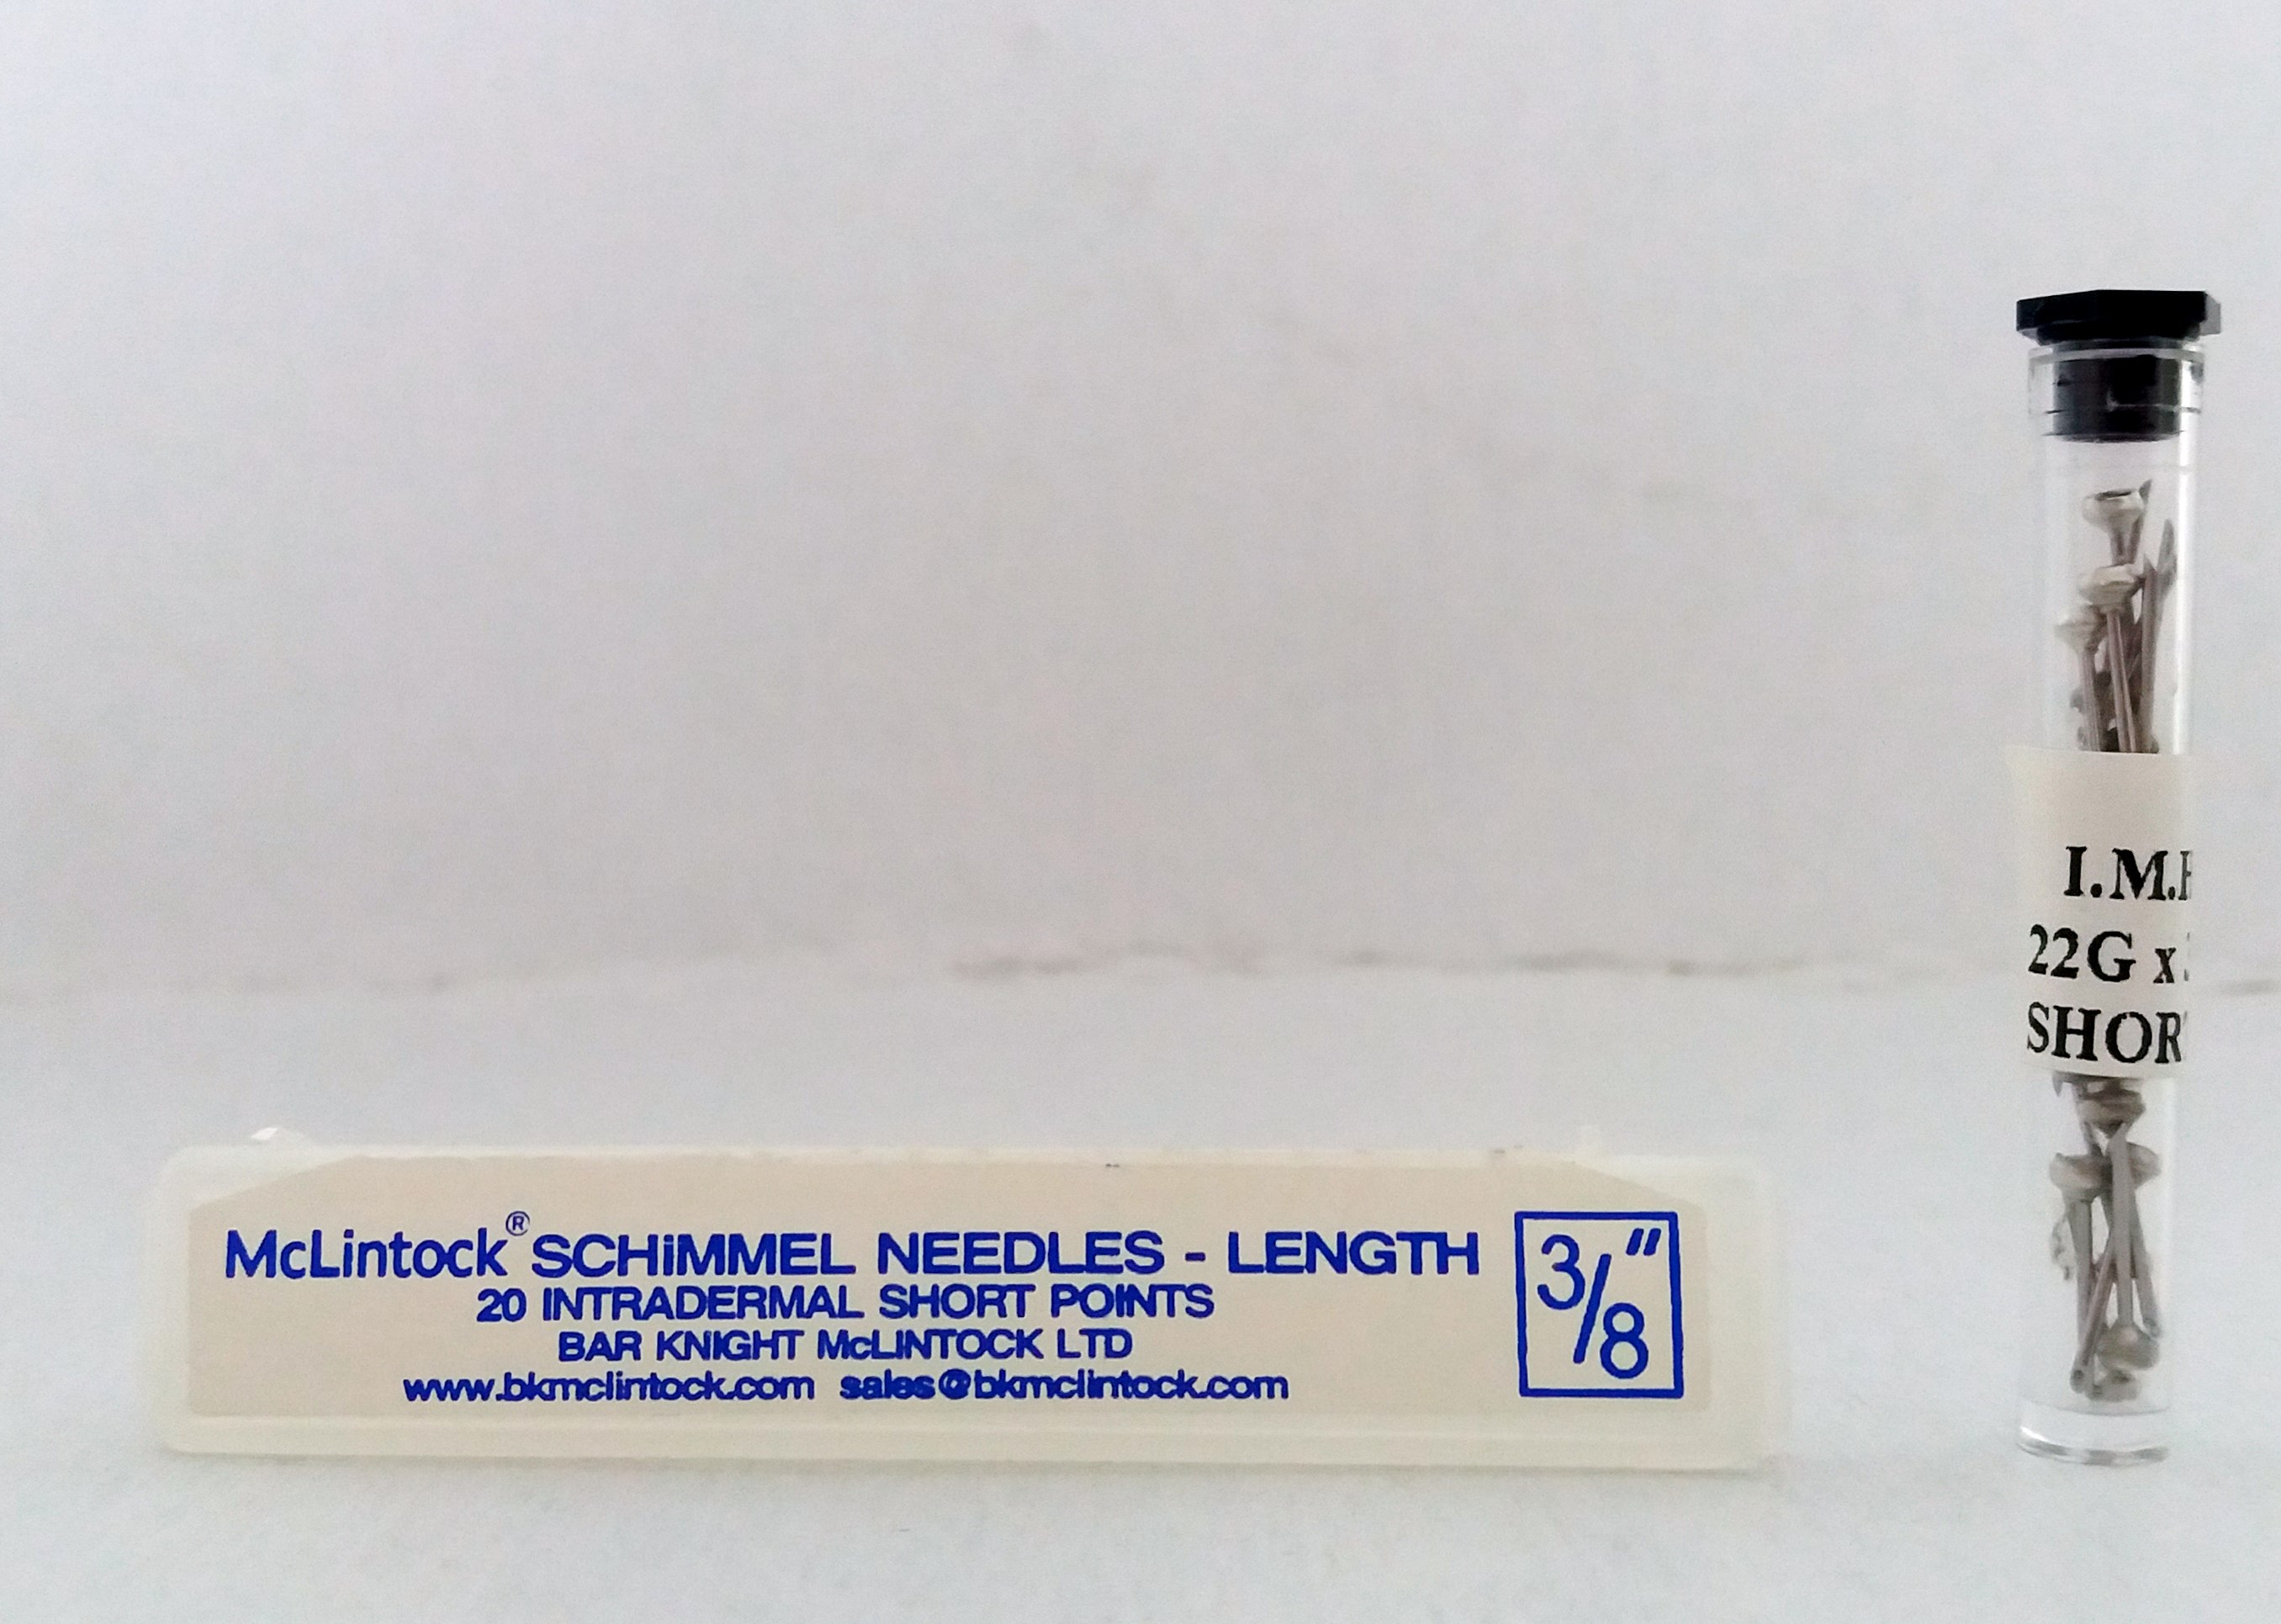 TB needles McLintock, 3/8"